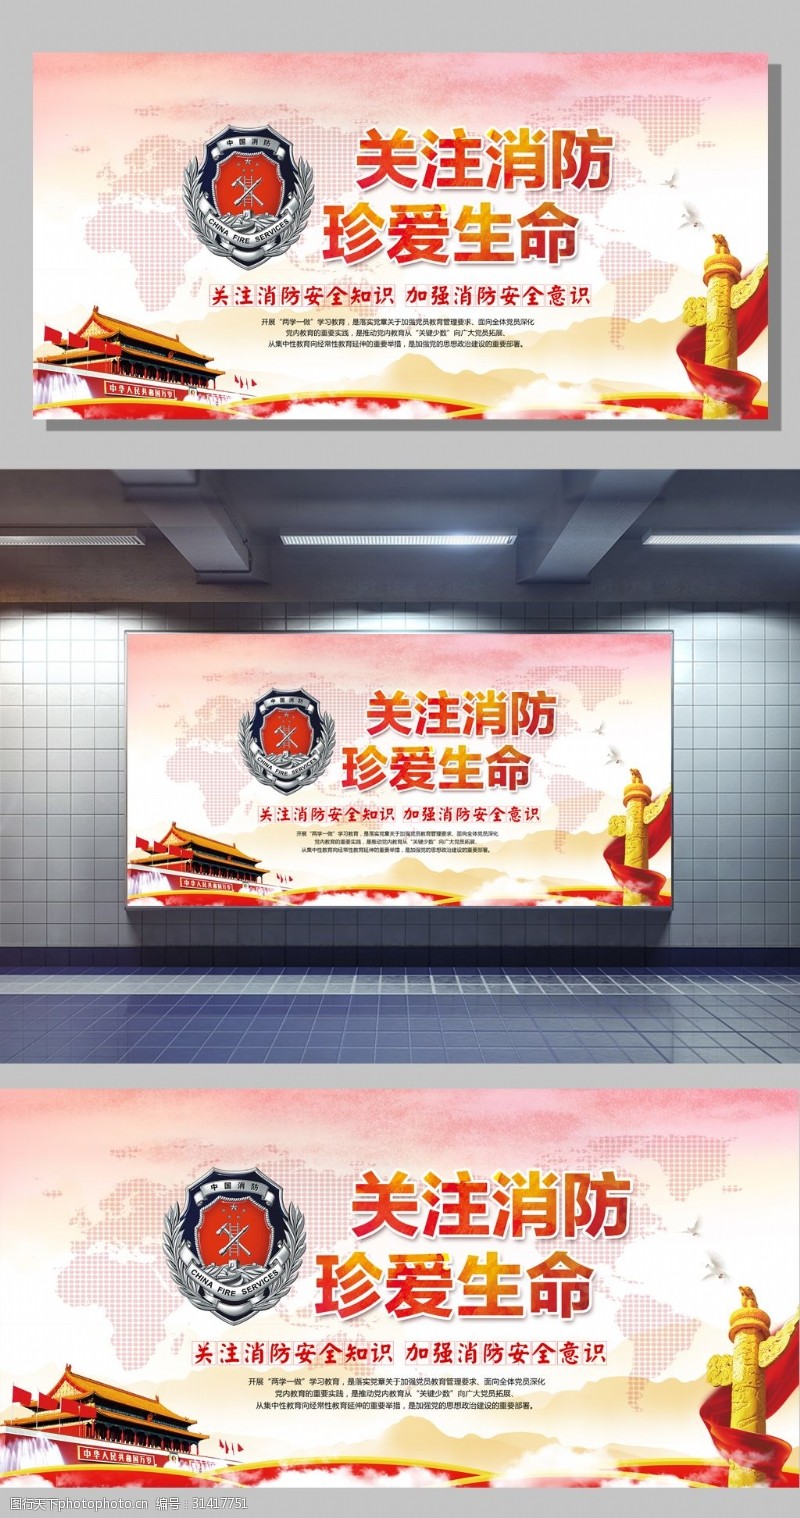 消防文化口号关注消防珍爱生命消防安全宣传海报展板